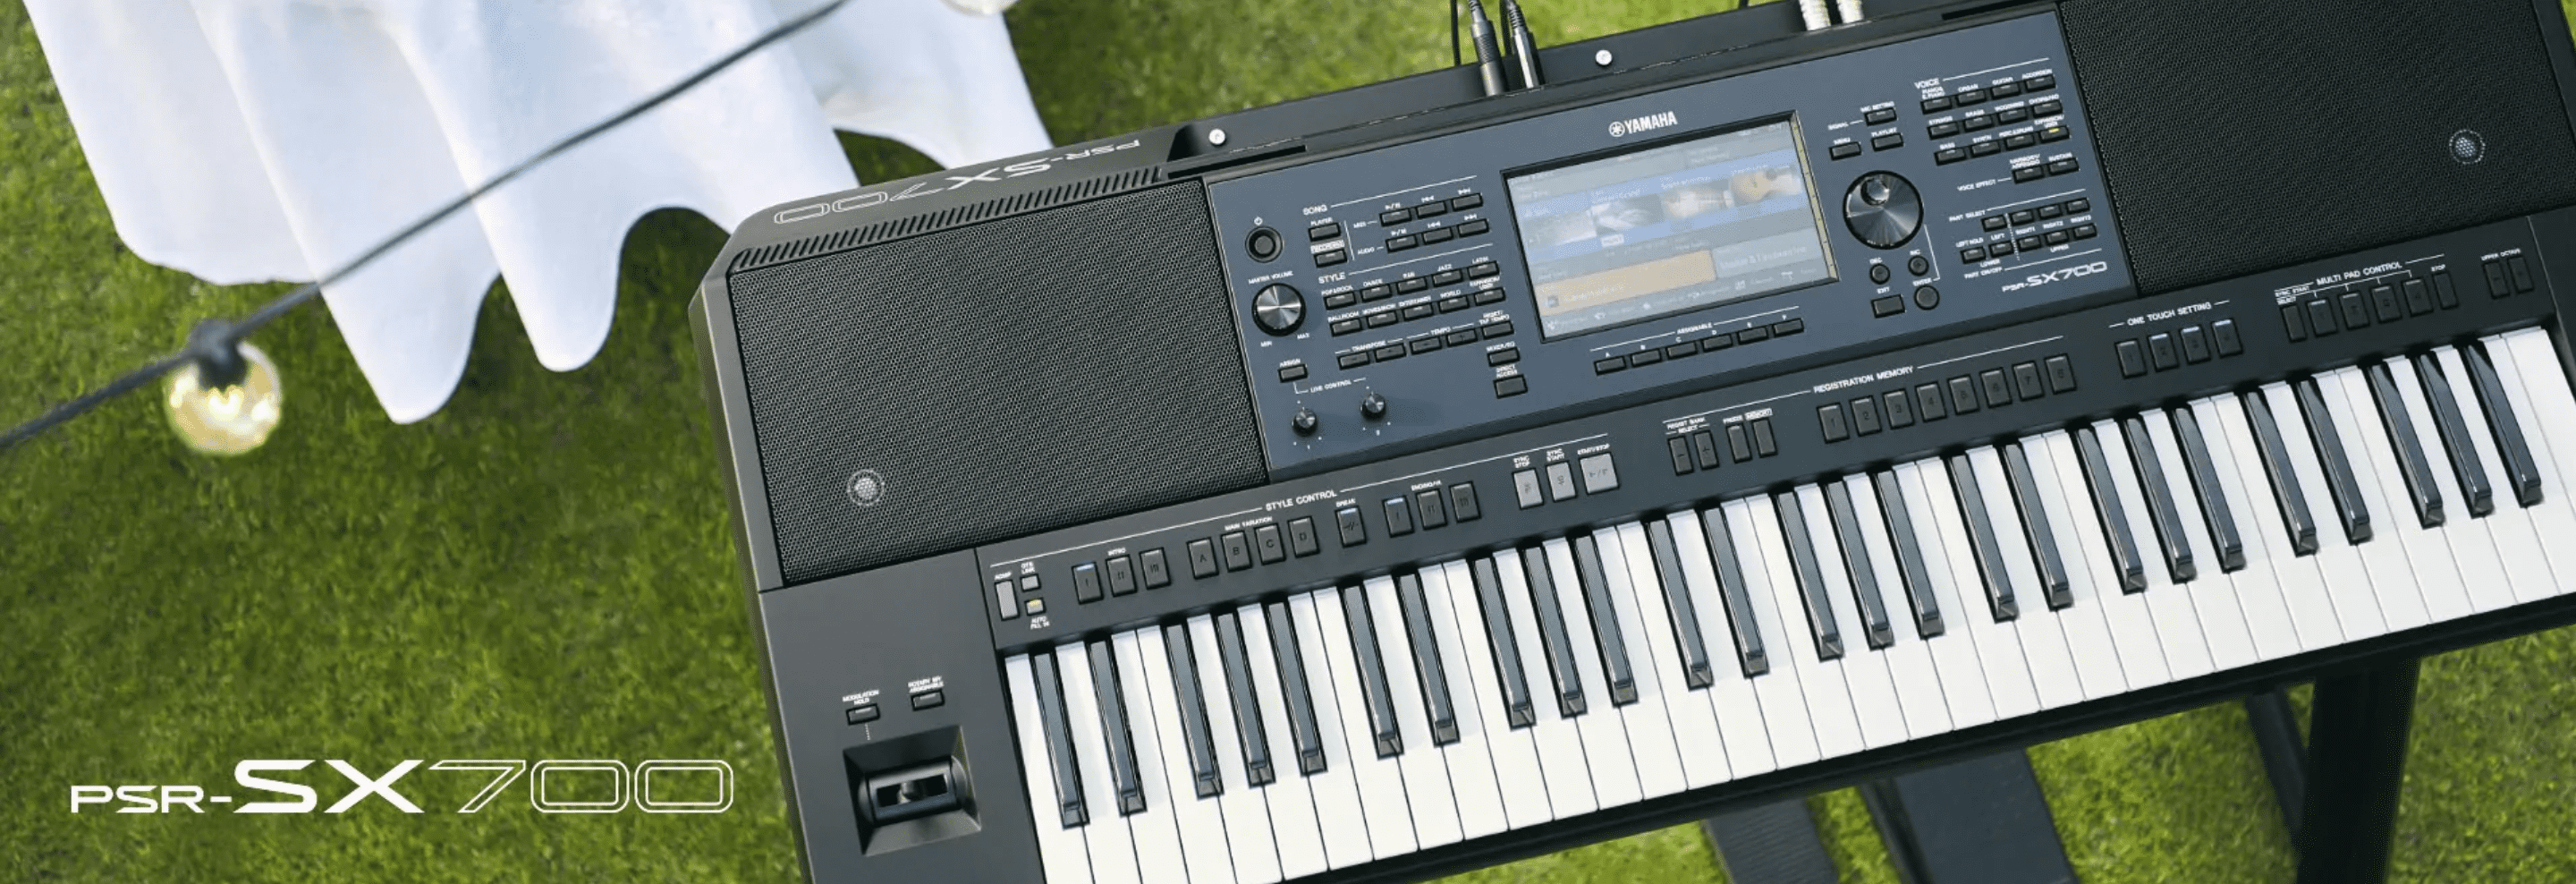 Organ Yamaha PSR SX-700